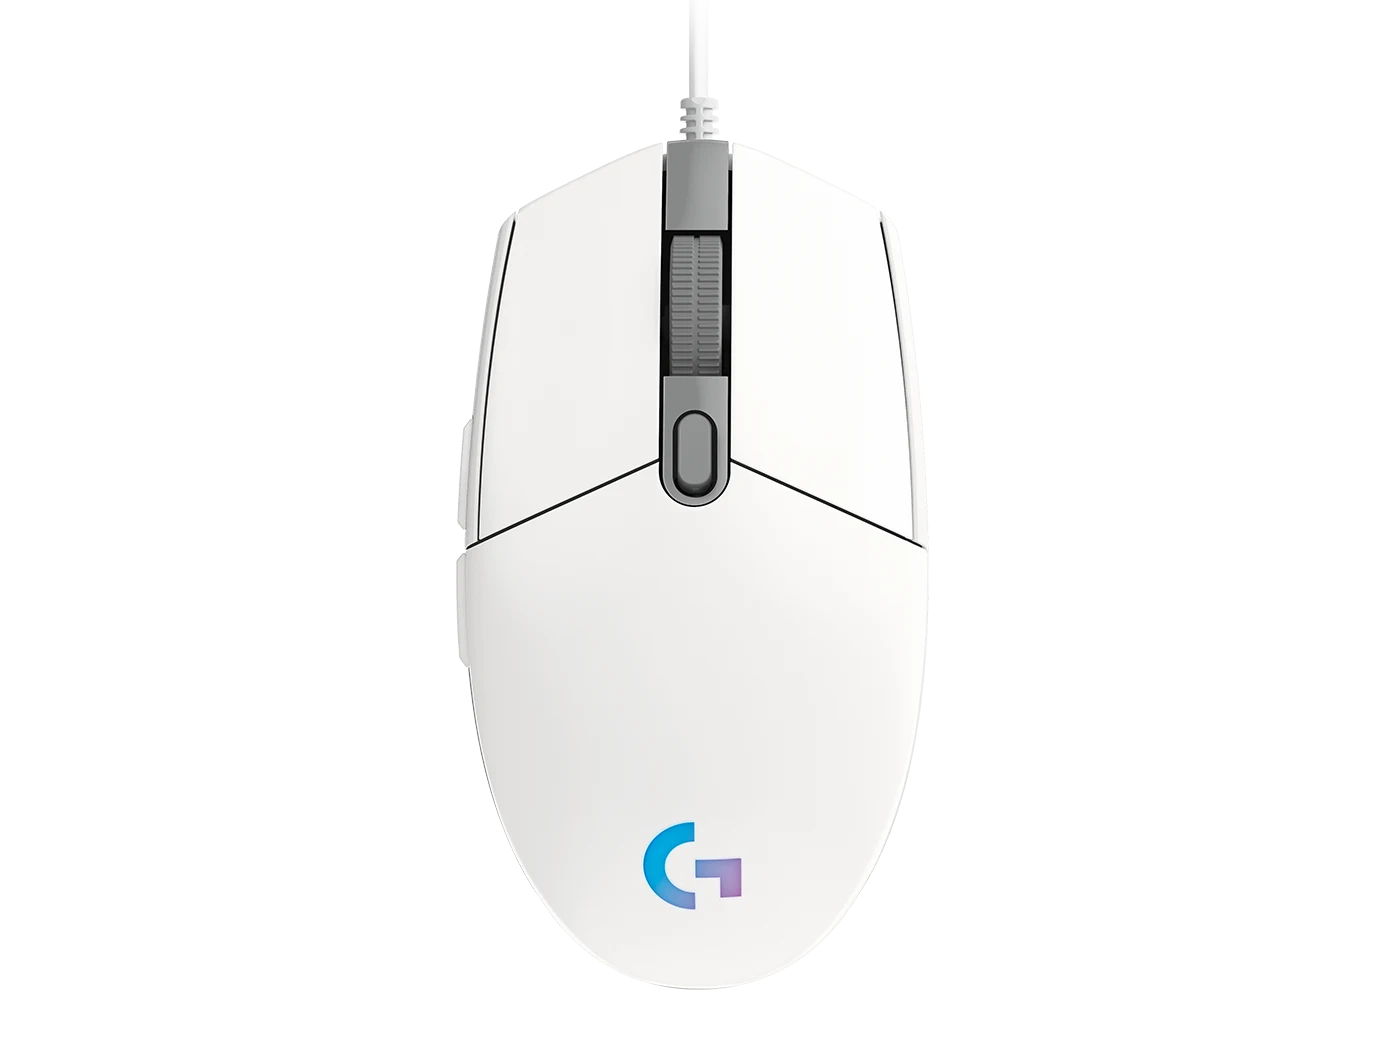 Logitech G G203 Lightsync 電競滑鼠 (白色) #910-005791